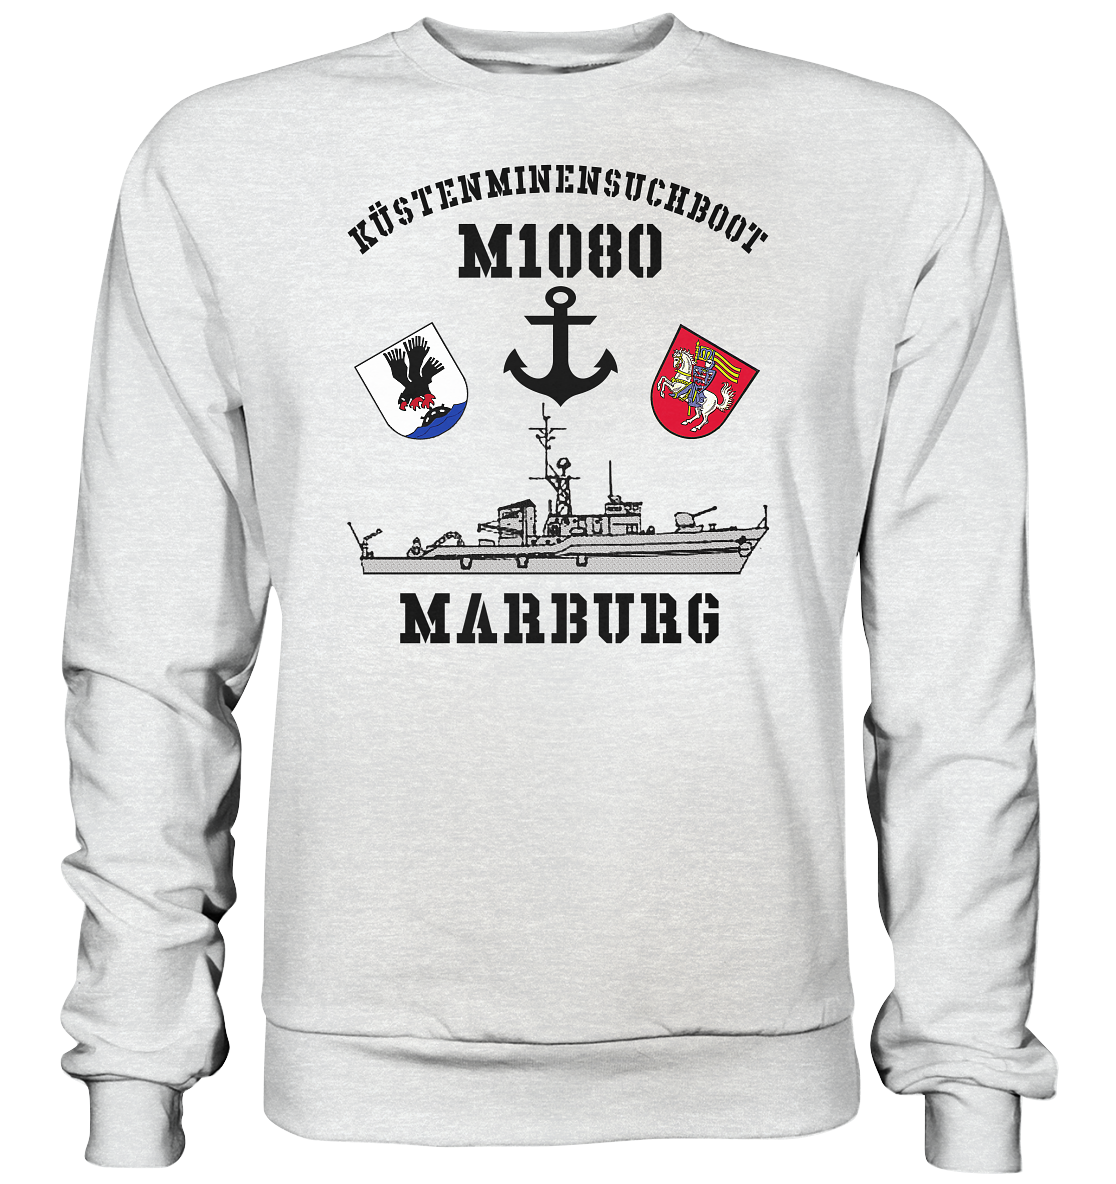 KM-Boot M1080 MARBURG - Premium Sweatshirt